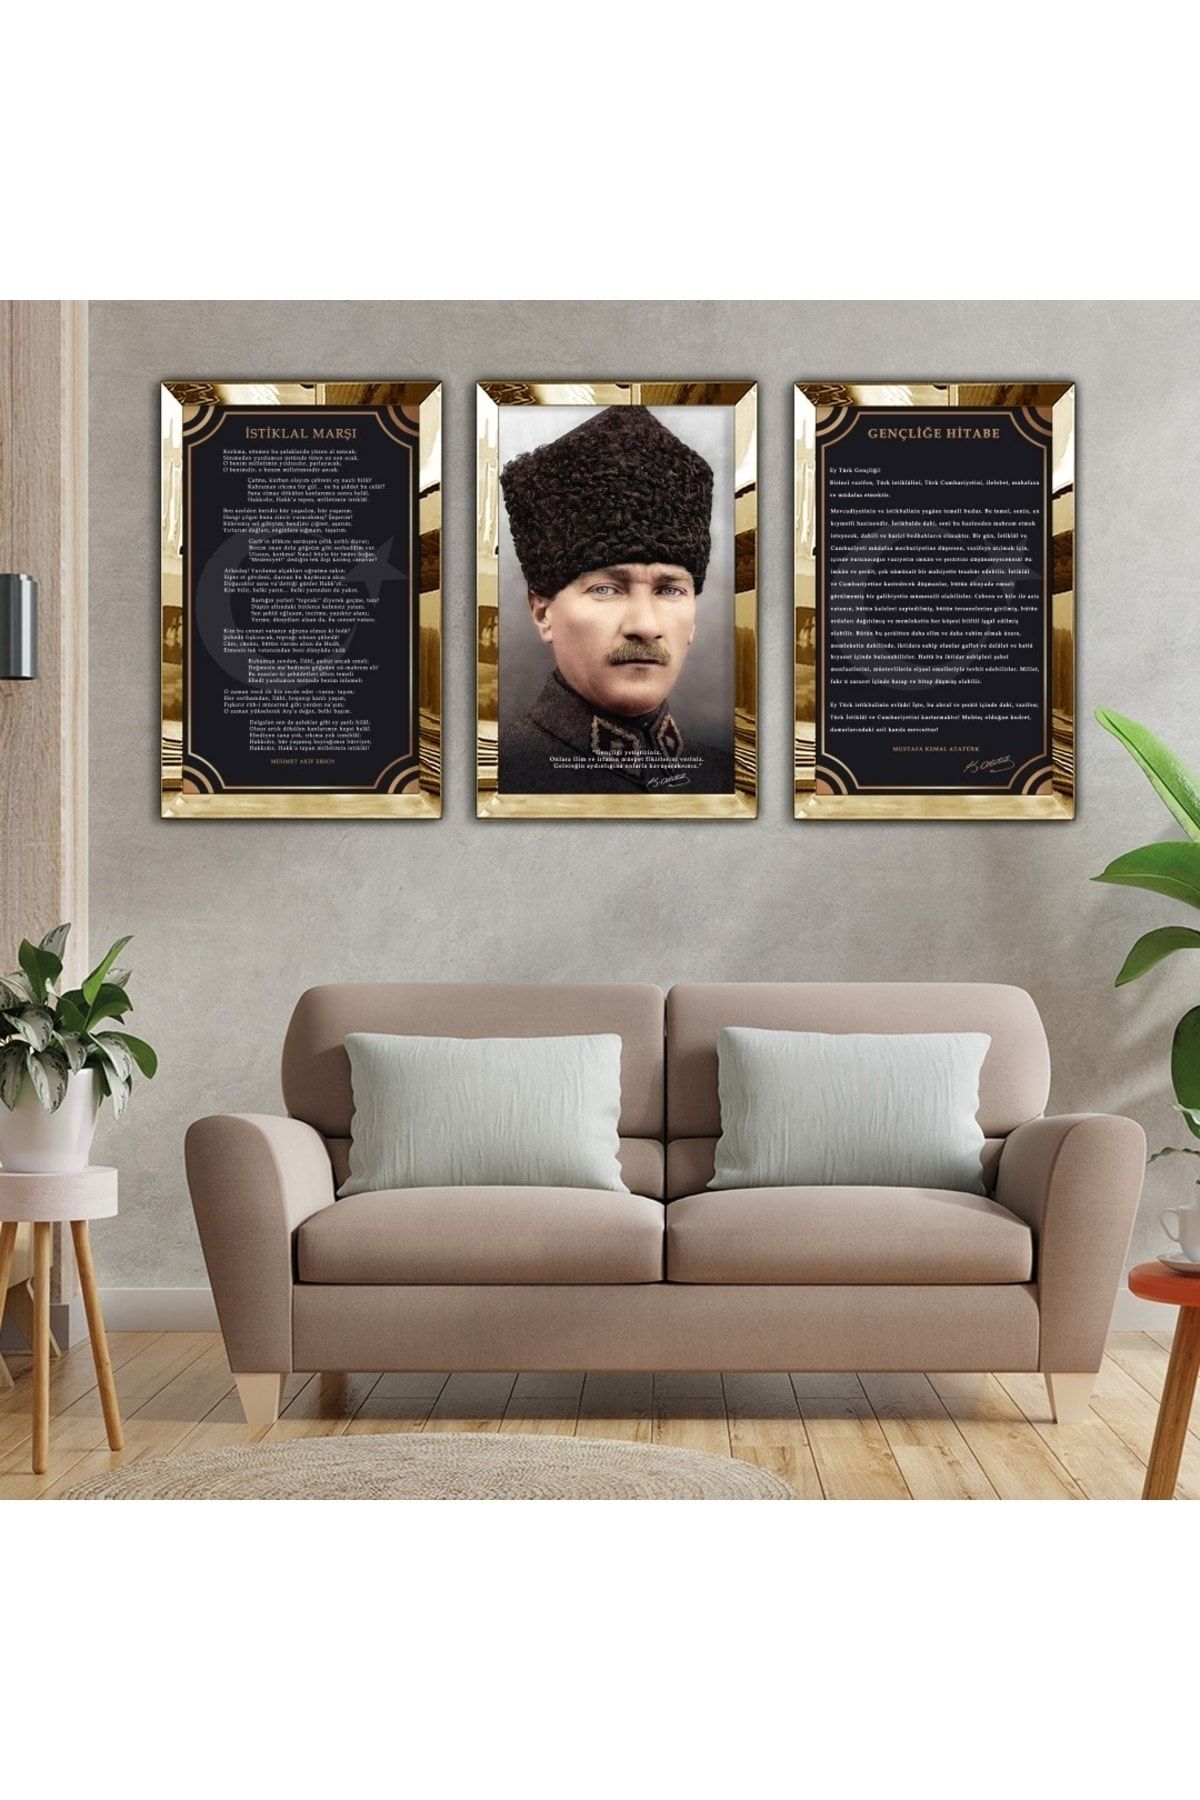 Zevahir Mobilya Dekorasyon Atatürk Istiklal Marşı Ve Gençliğe Hitabe 3lü Pleksi Tablo